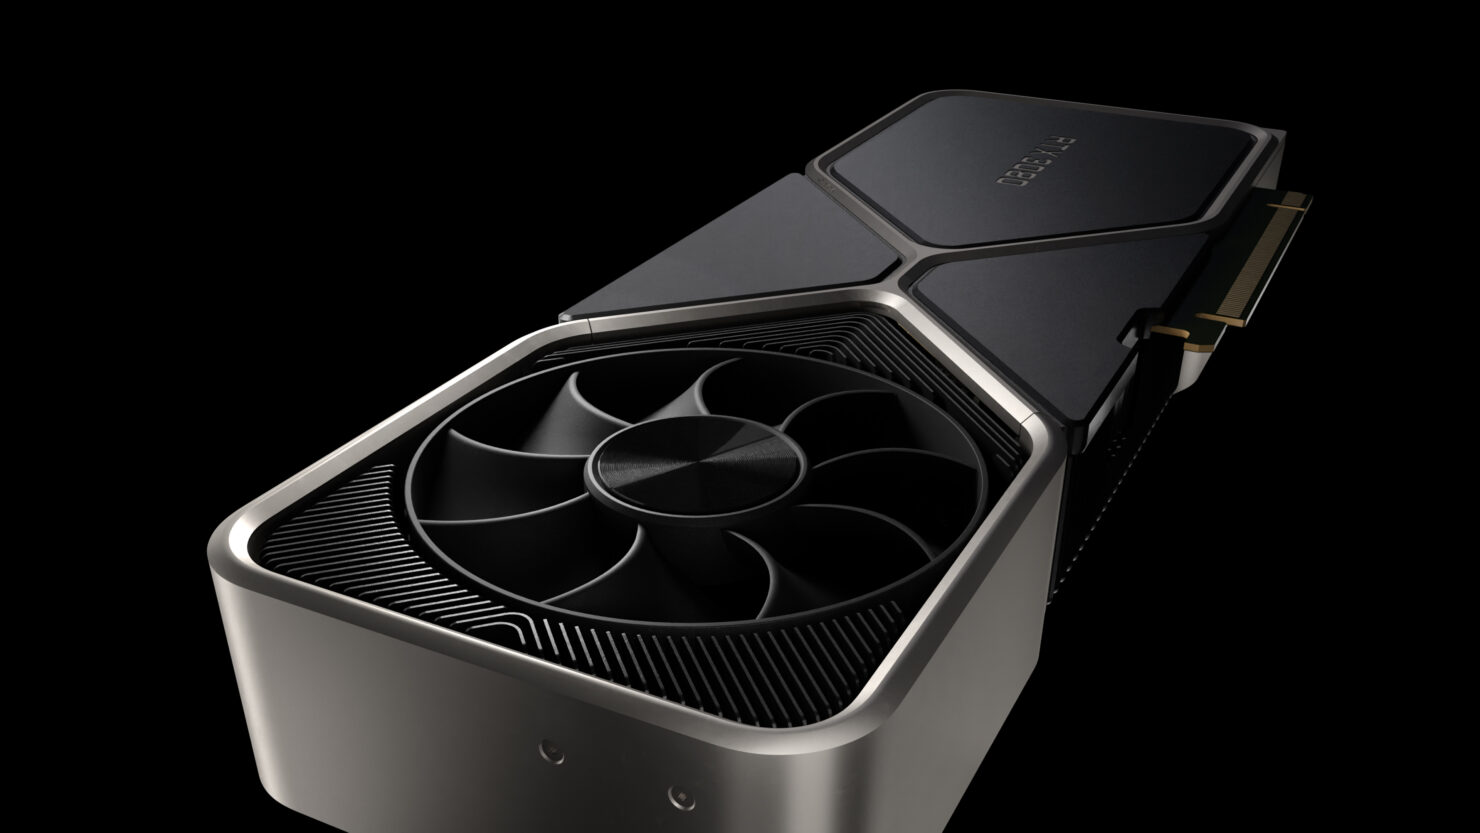 NVIDIA GeForce RTX 3080 Tanıtıldı! İşte Fiyatı ve Özellikleri - Technopat